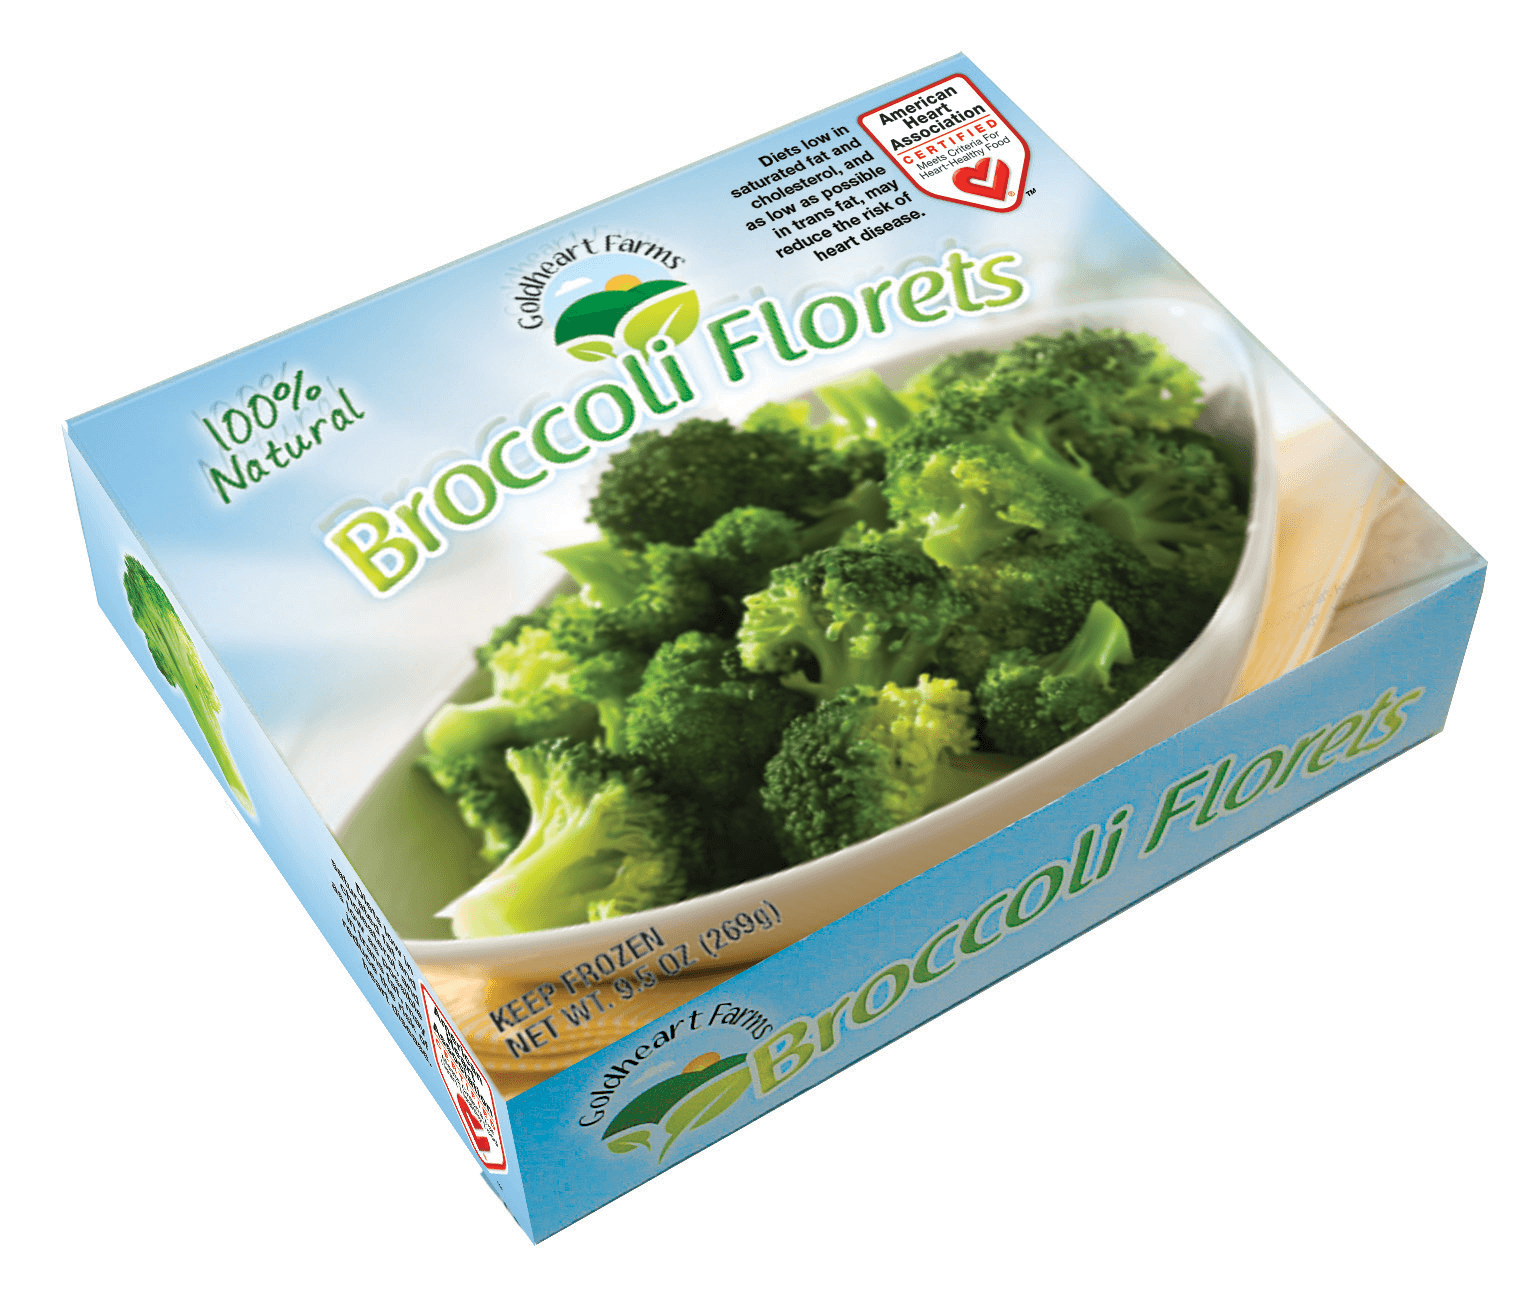 Paquete de brócoli congelado con la marca Heart-Check